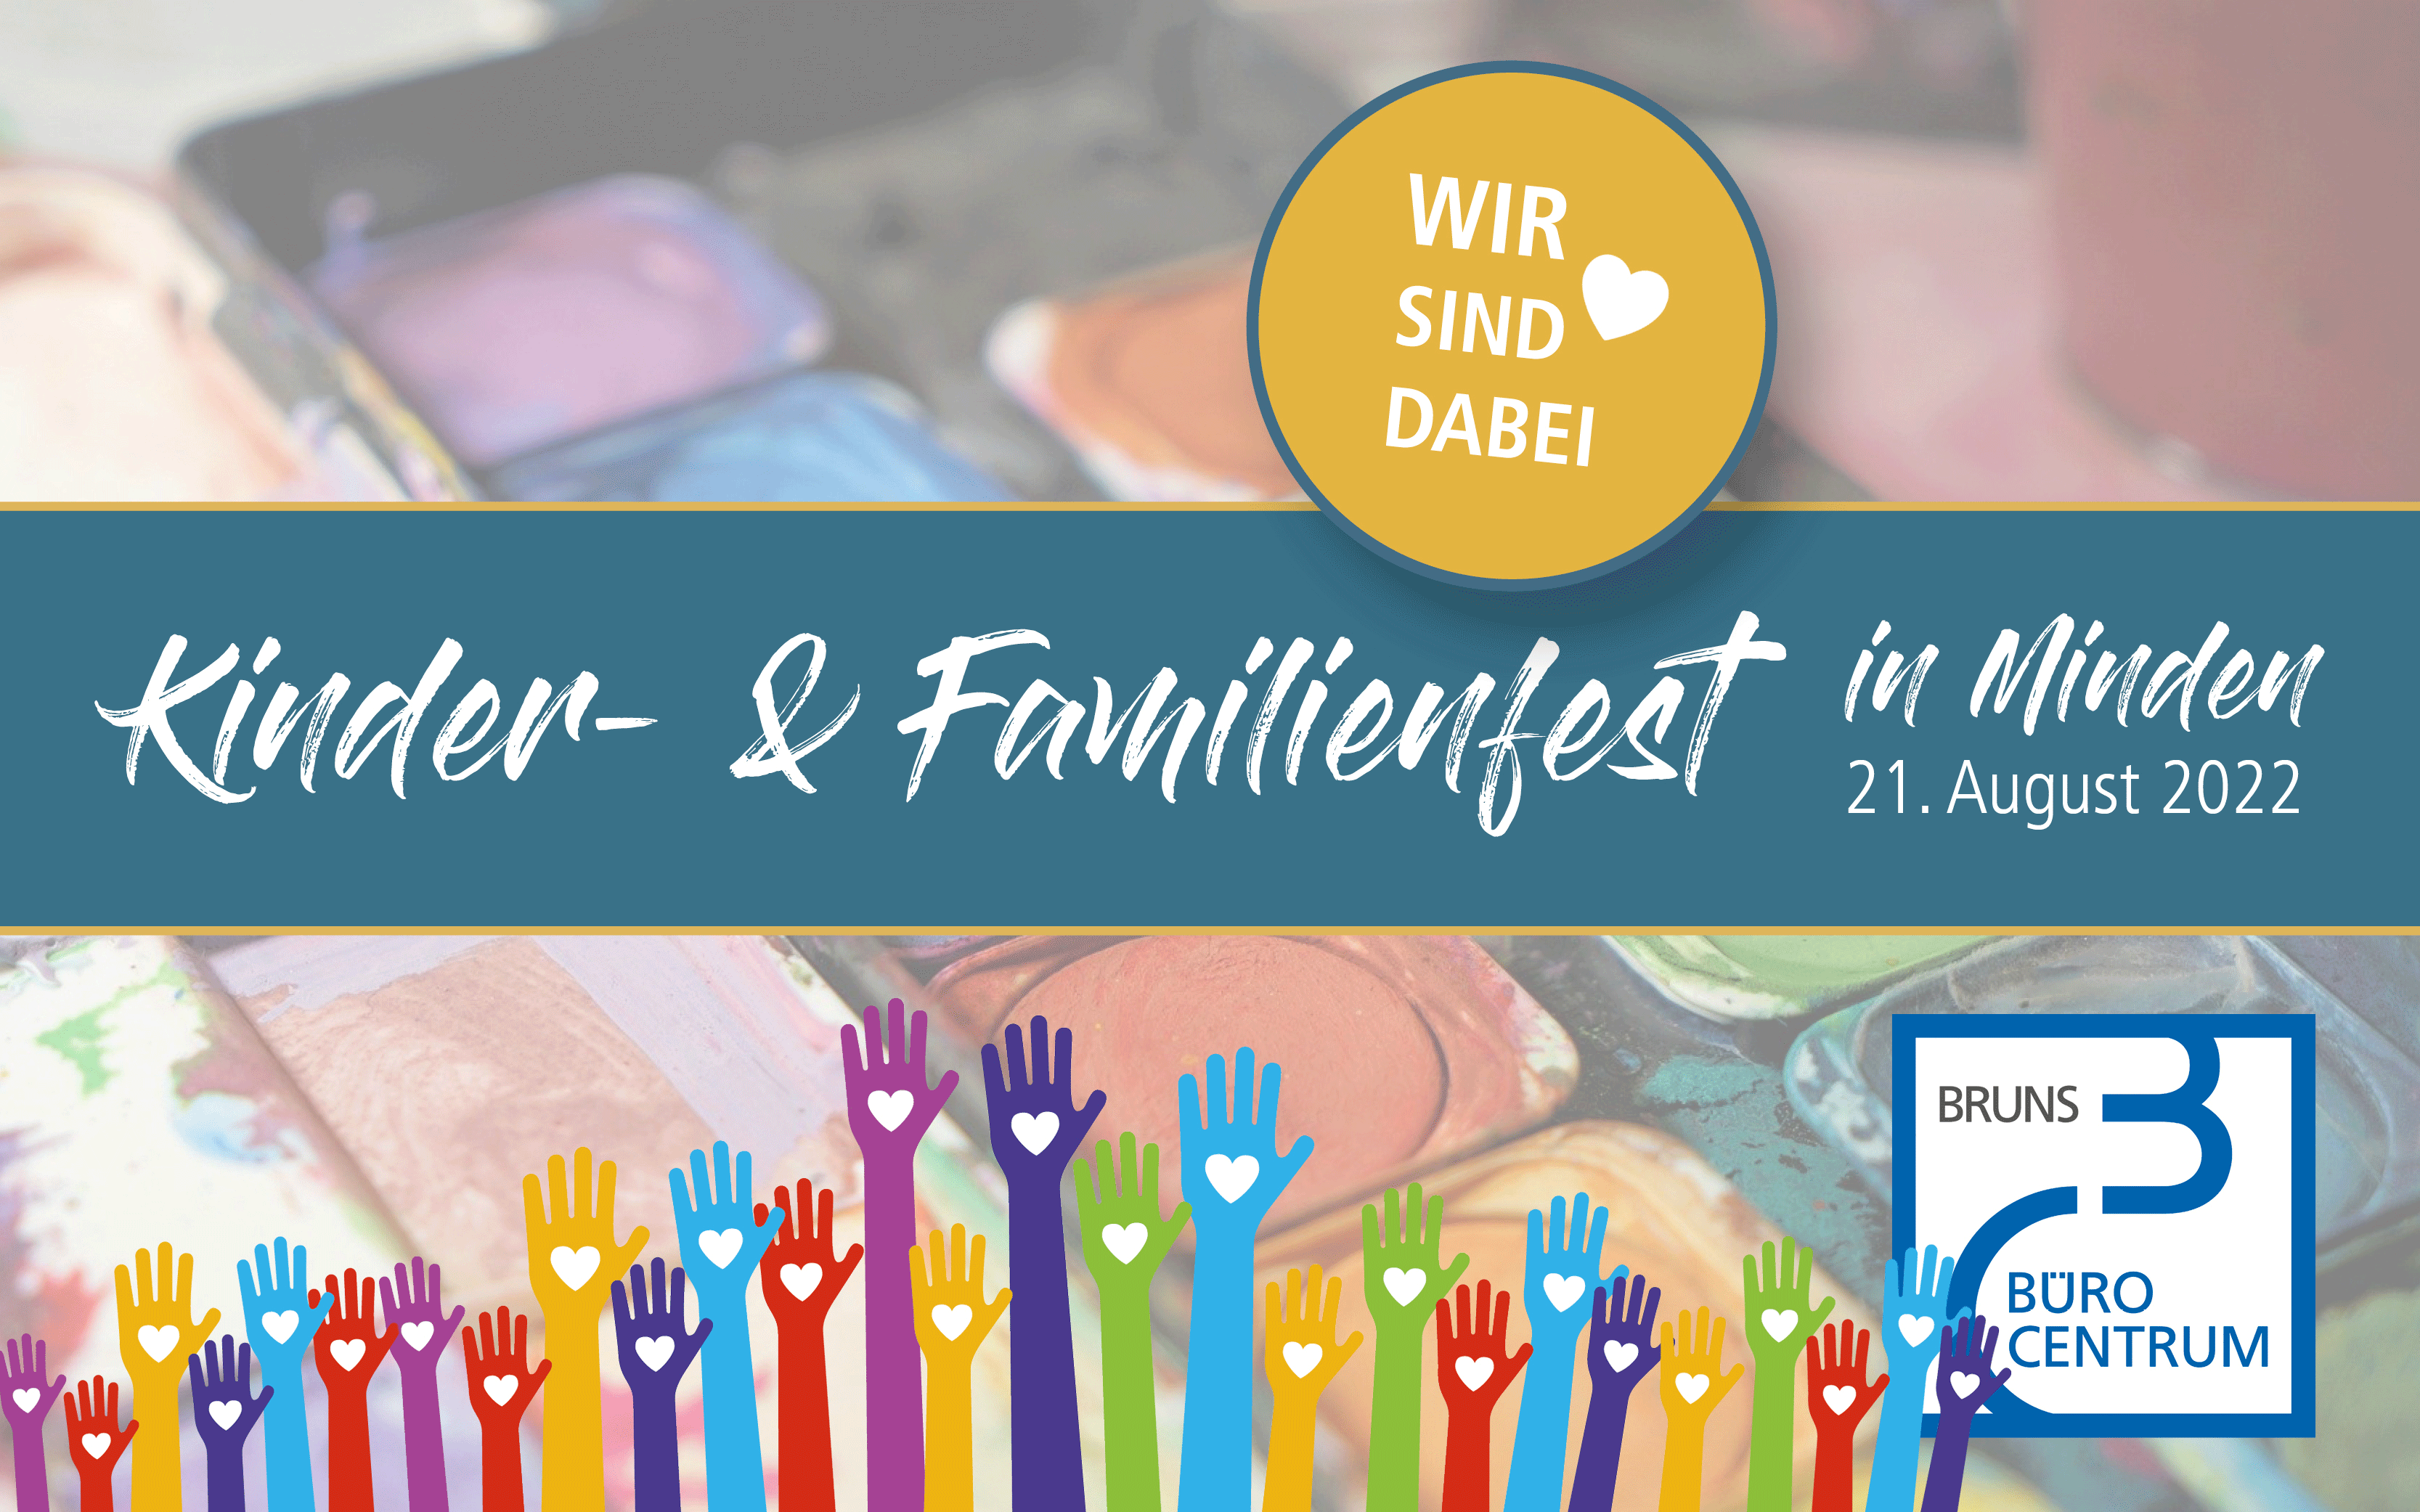 Großes Kinder- & Familienfest in Minden am 21. August 2022 - Wir sind dabei!